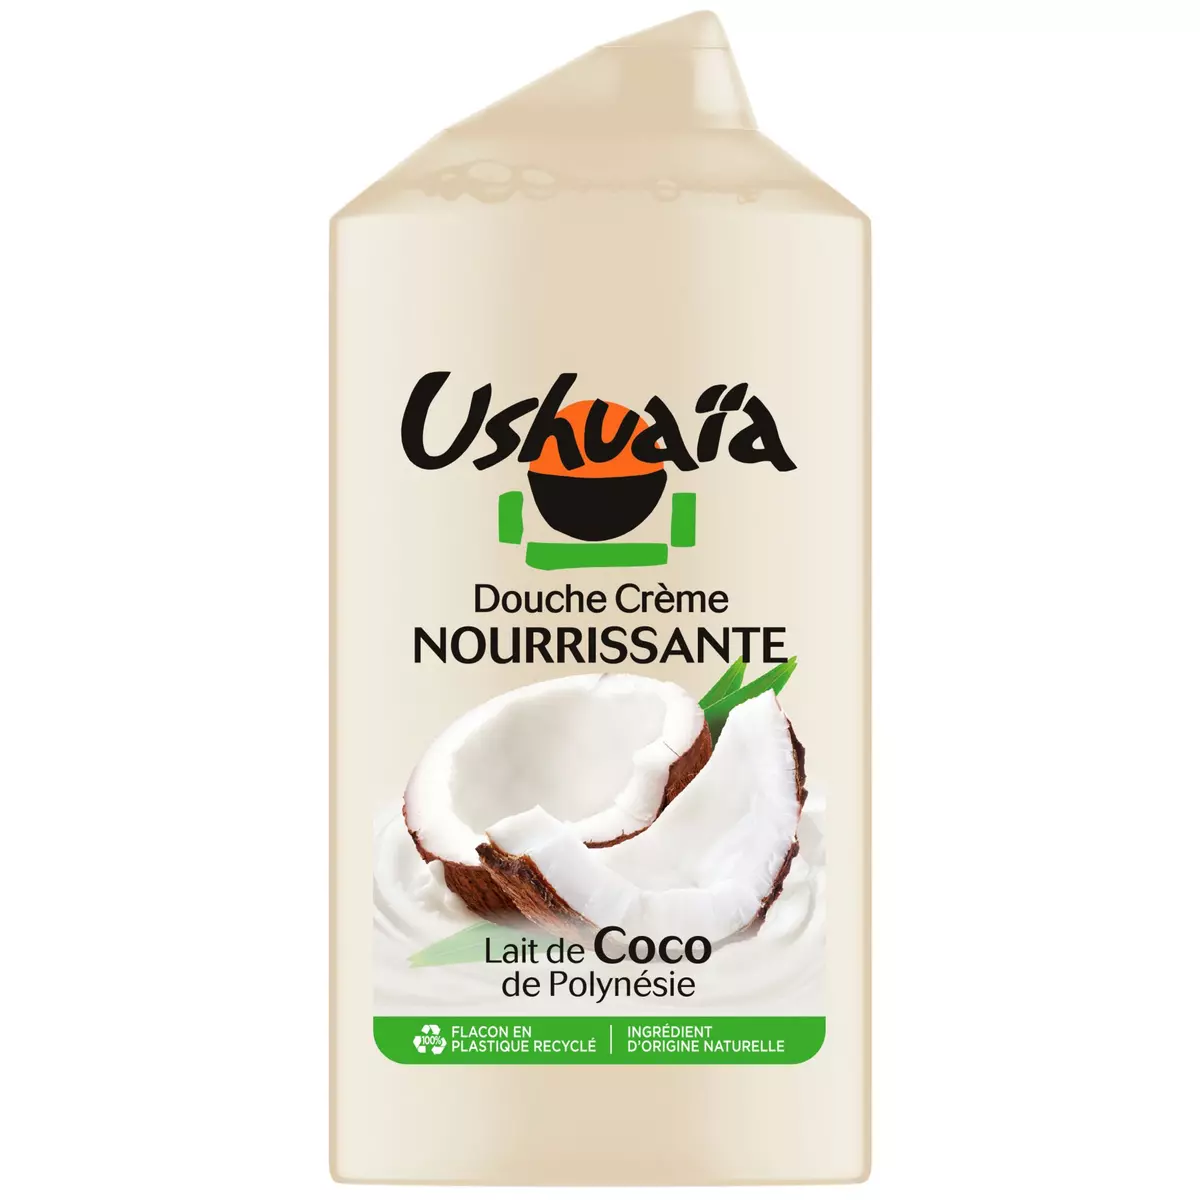 USHUAIA Douche crème nourrissante lait de coco de Polynésie 300ml